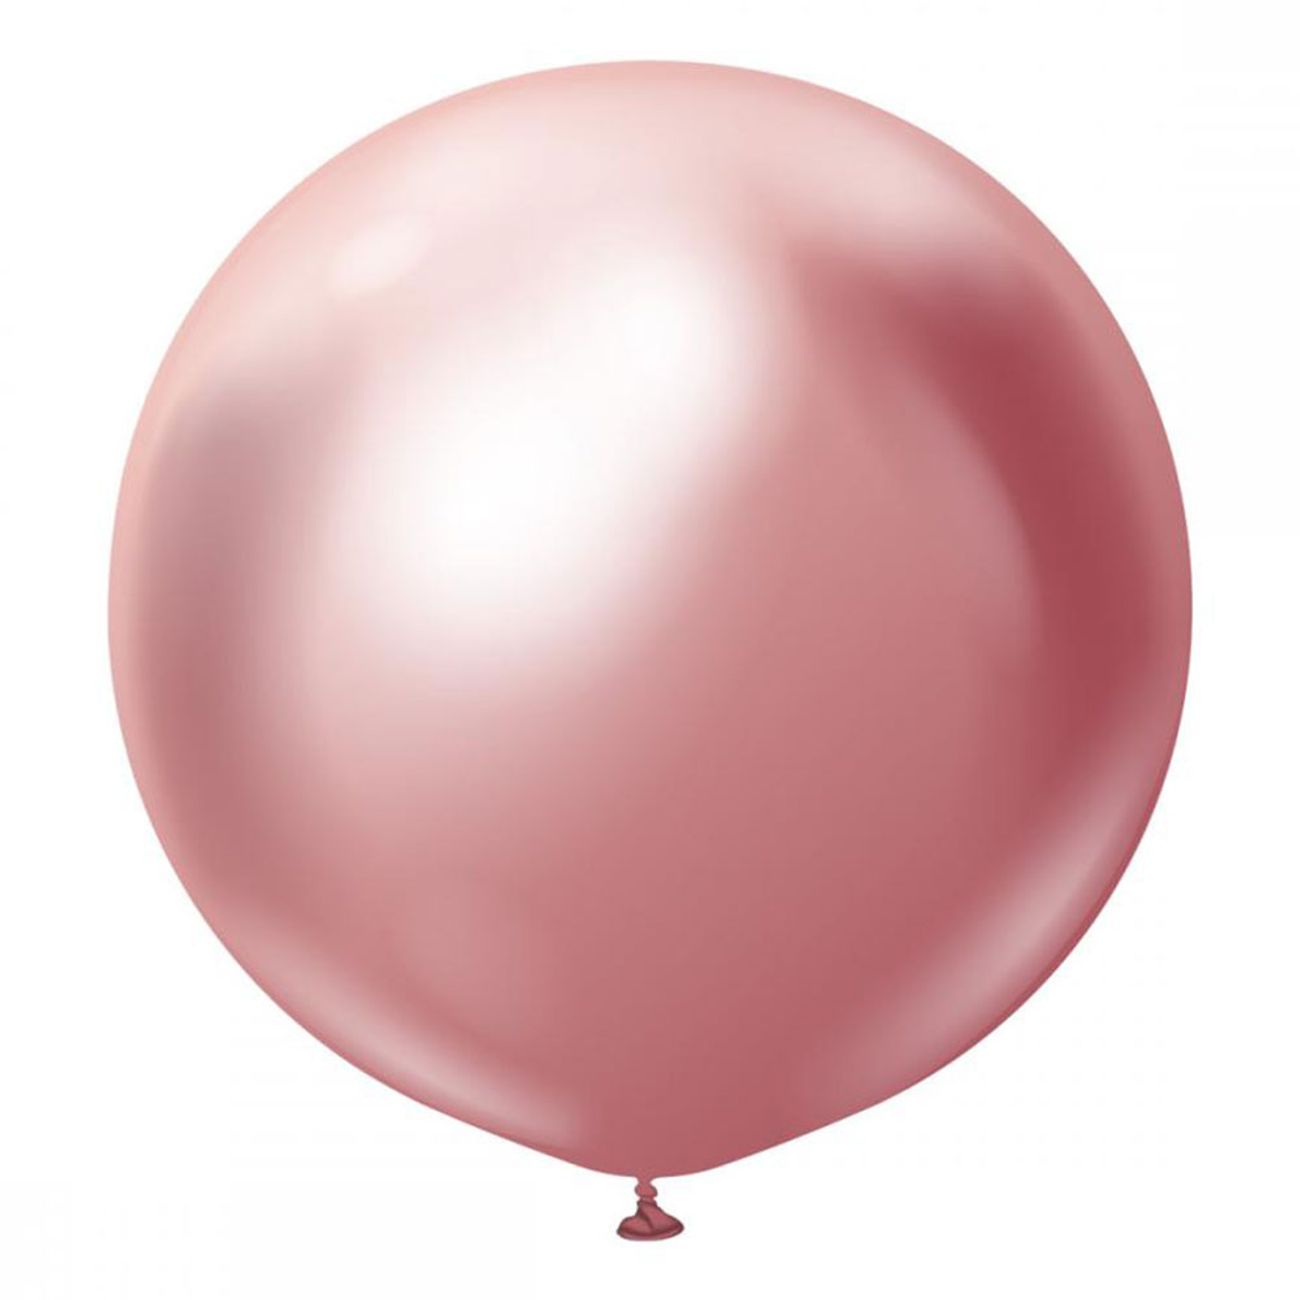 latexballonger-pink-chrome-60-cm-10-83417-1